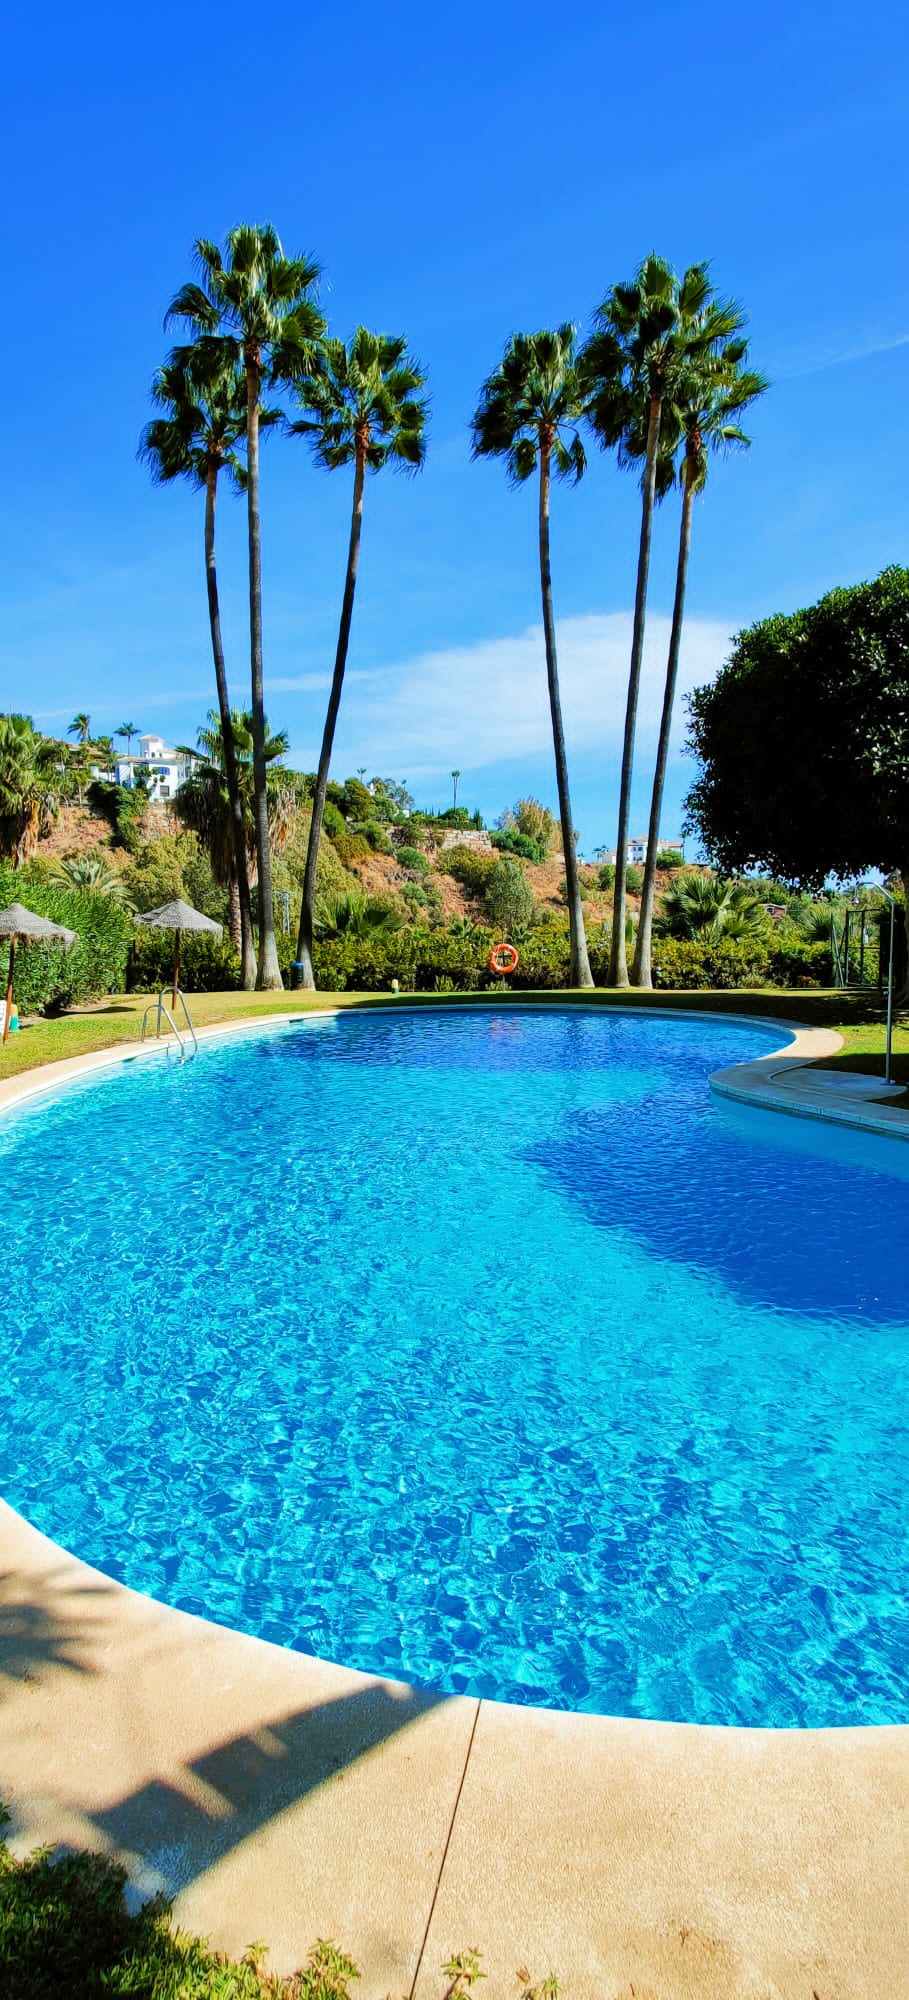 						Villa  Pareada
																					en alquiler
																			 en La Quinta
					